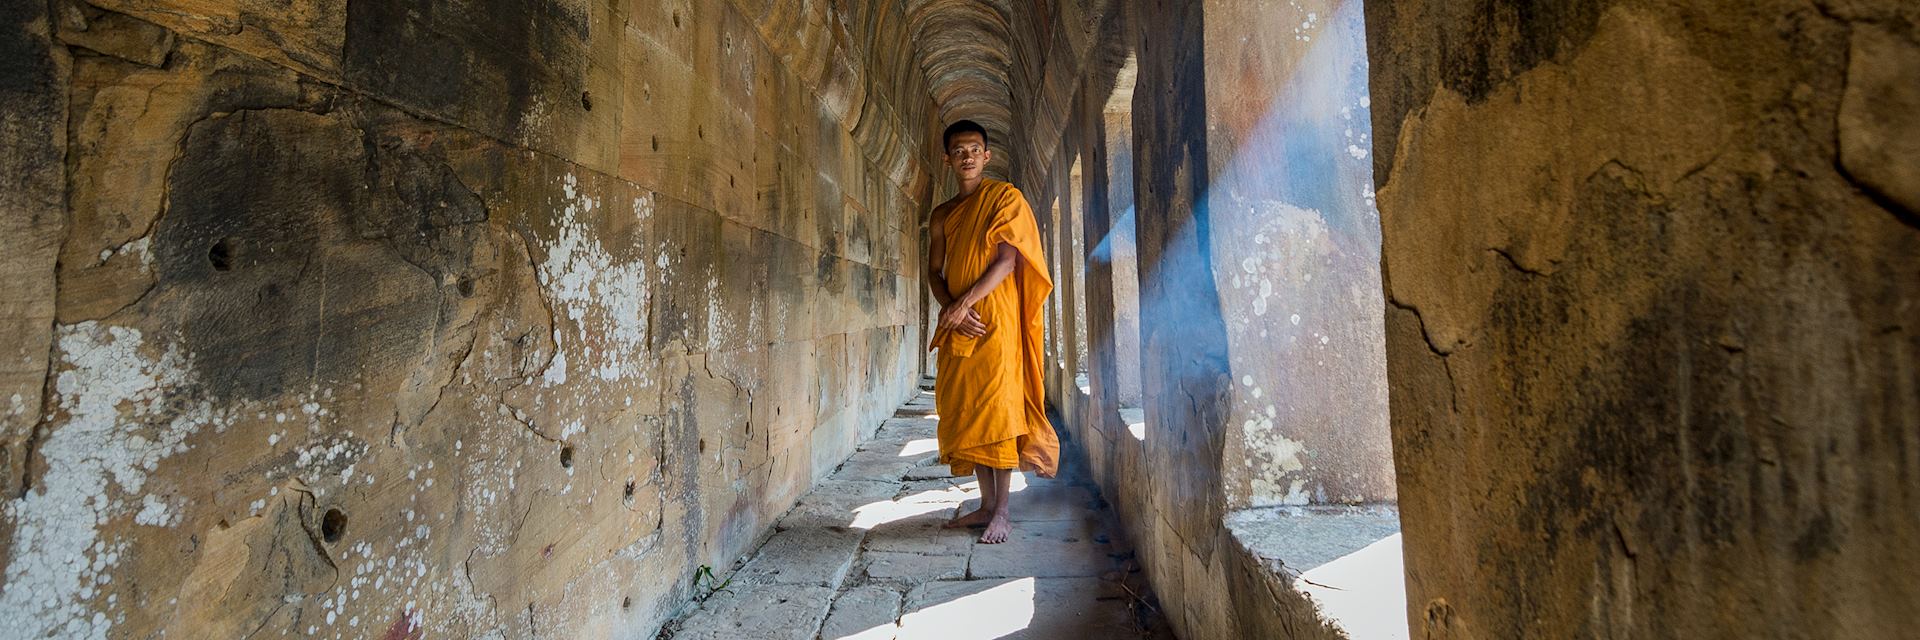 Monk at Preah Vihear